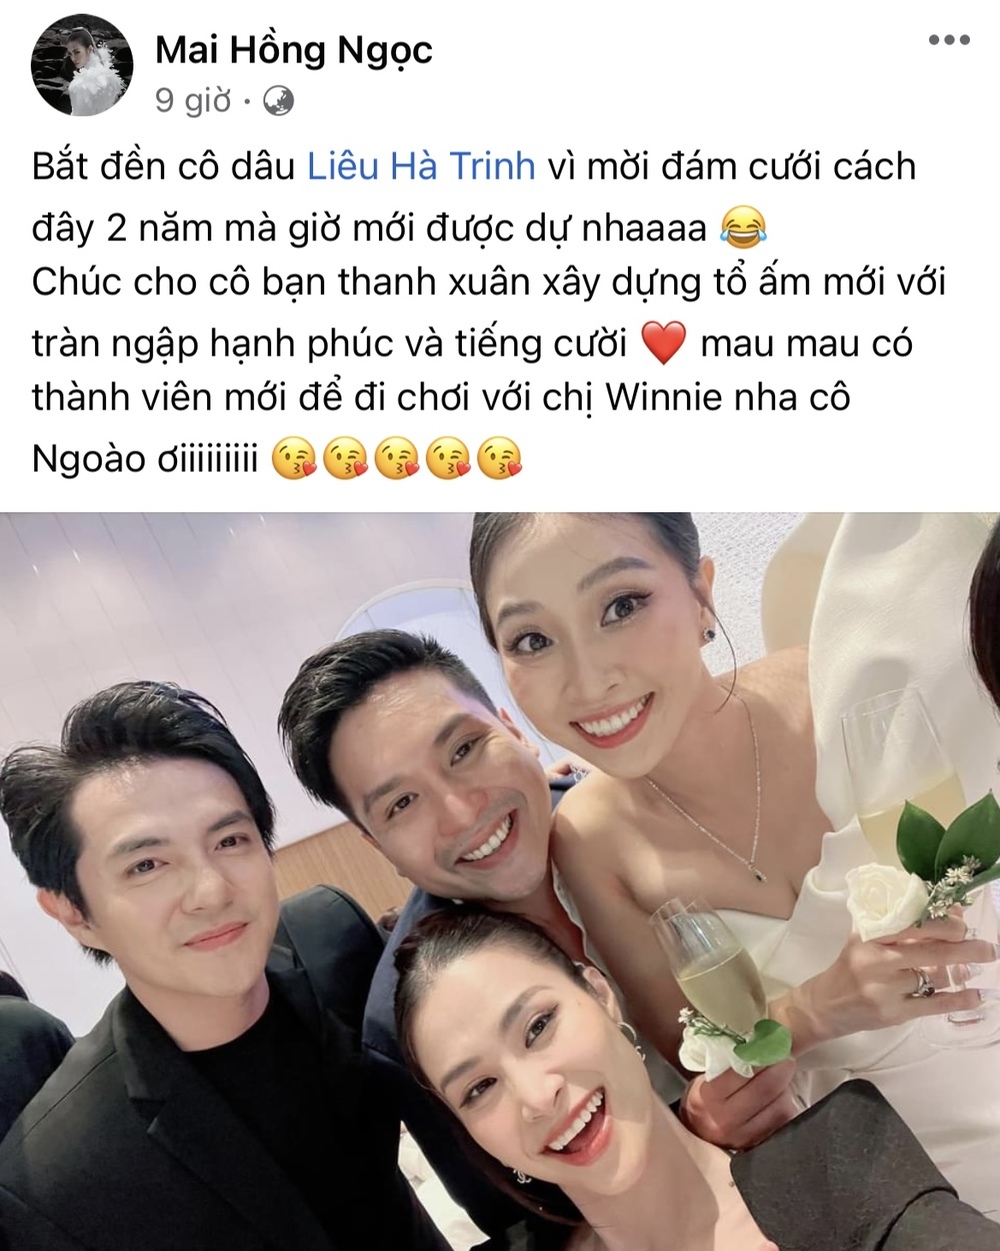  
Đông Nhi vui vẻ check in tại đám cưới Liêu Hà Trinh - Anh Khoa. (Ảnh: Chụp màn hình Facebook Mai Hồng Ngọc)